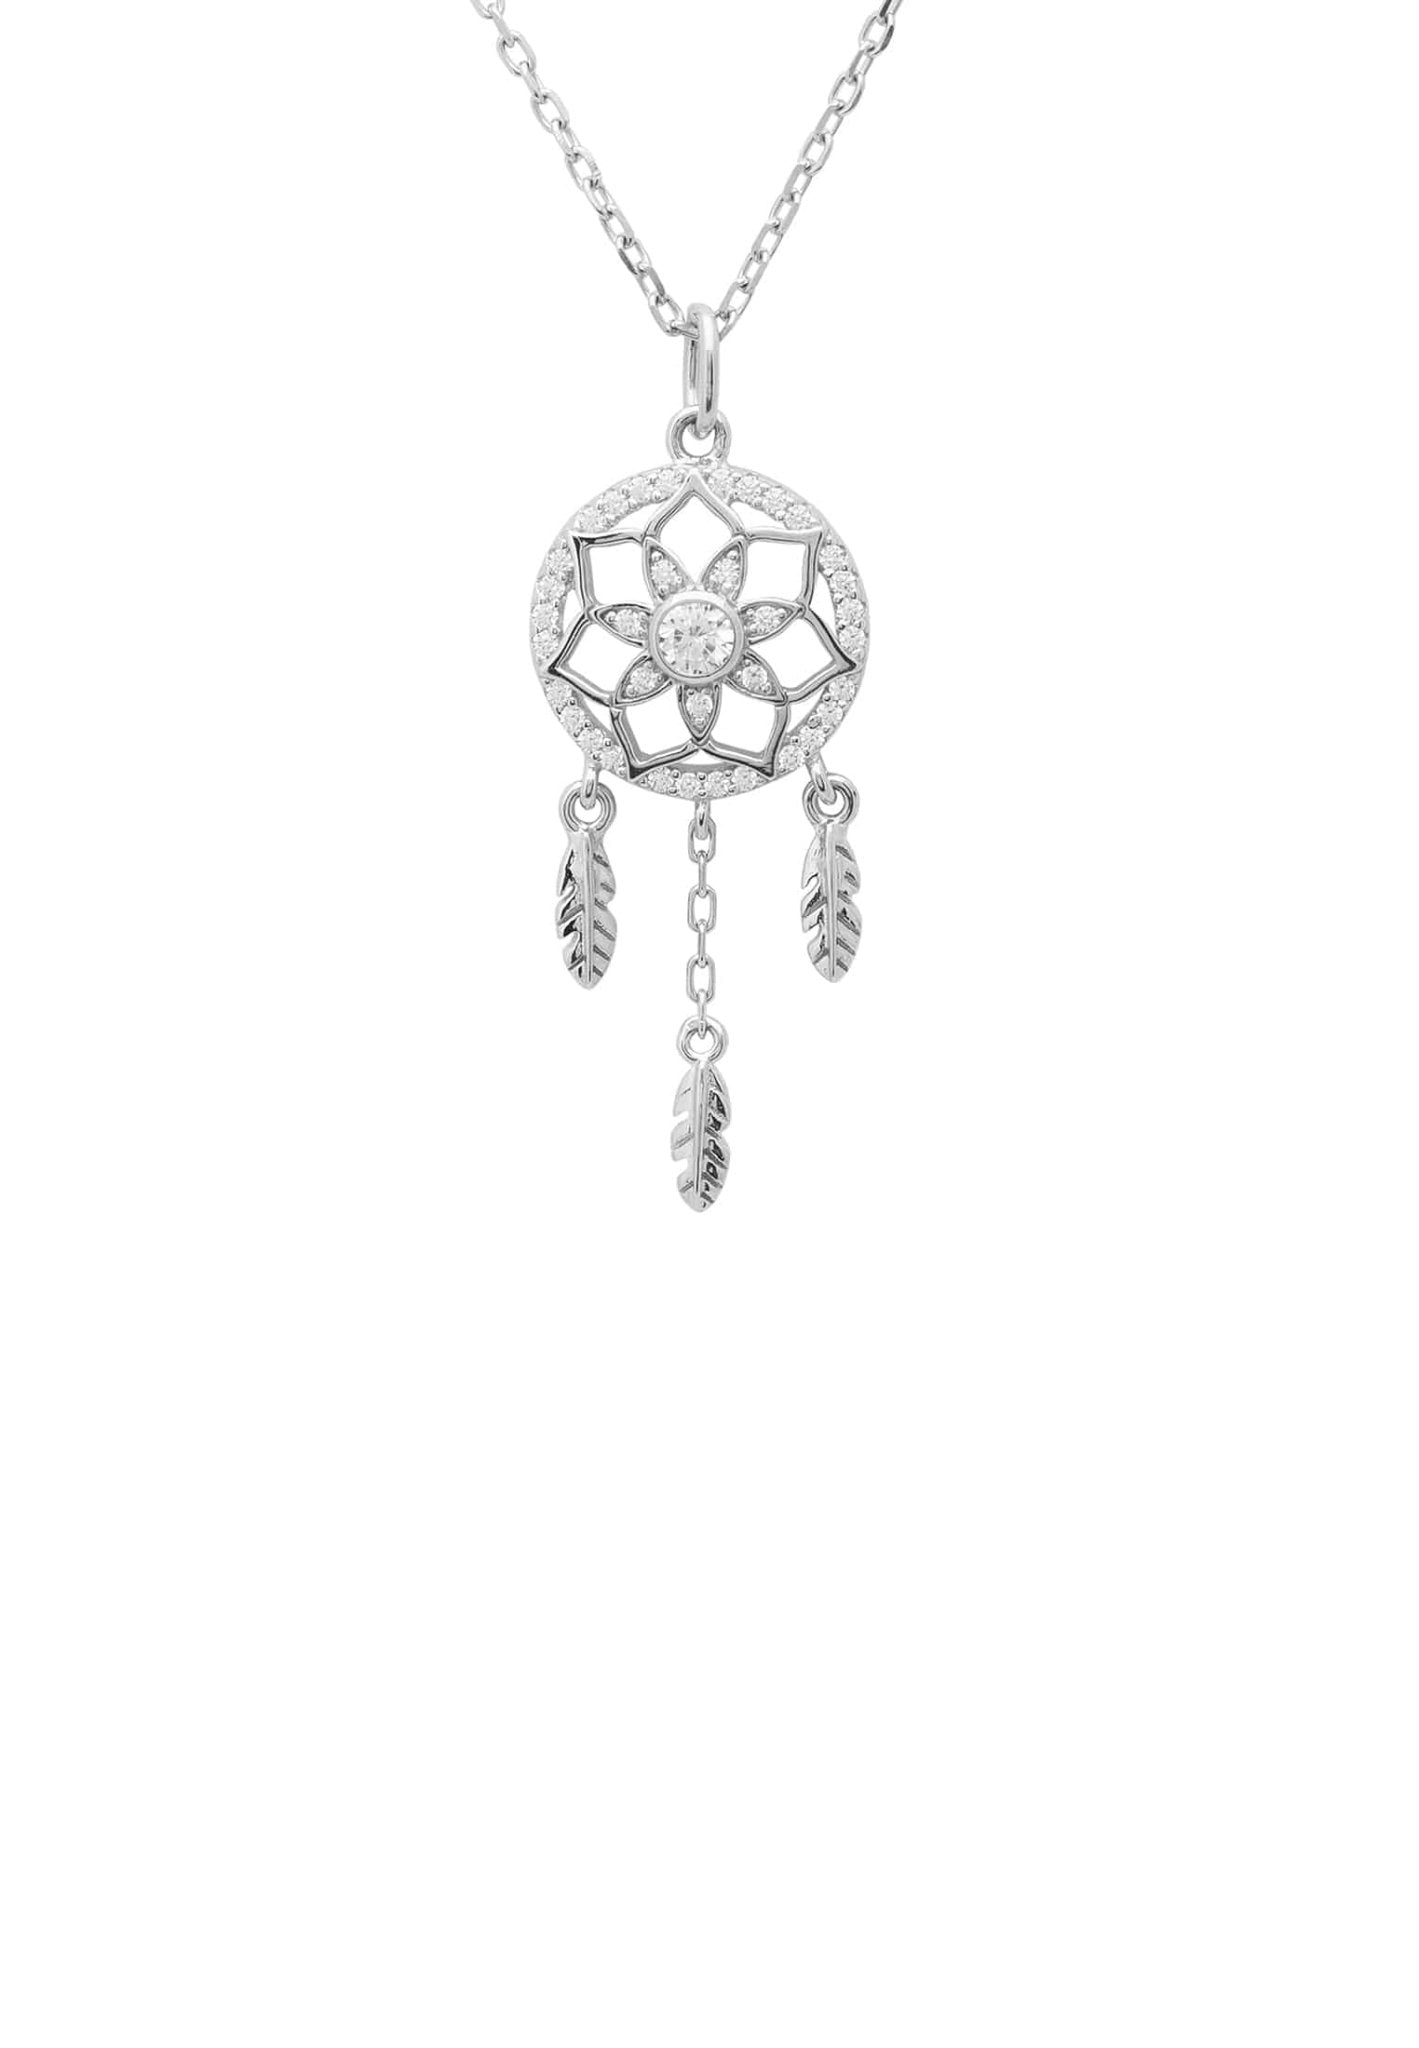 Dreamcatcher Necklace Silver - LATELITA Necklaces